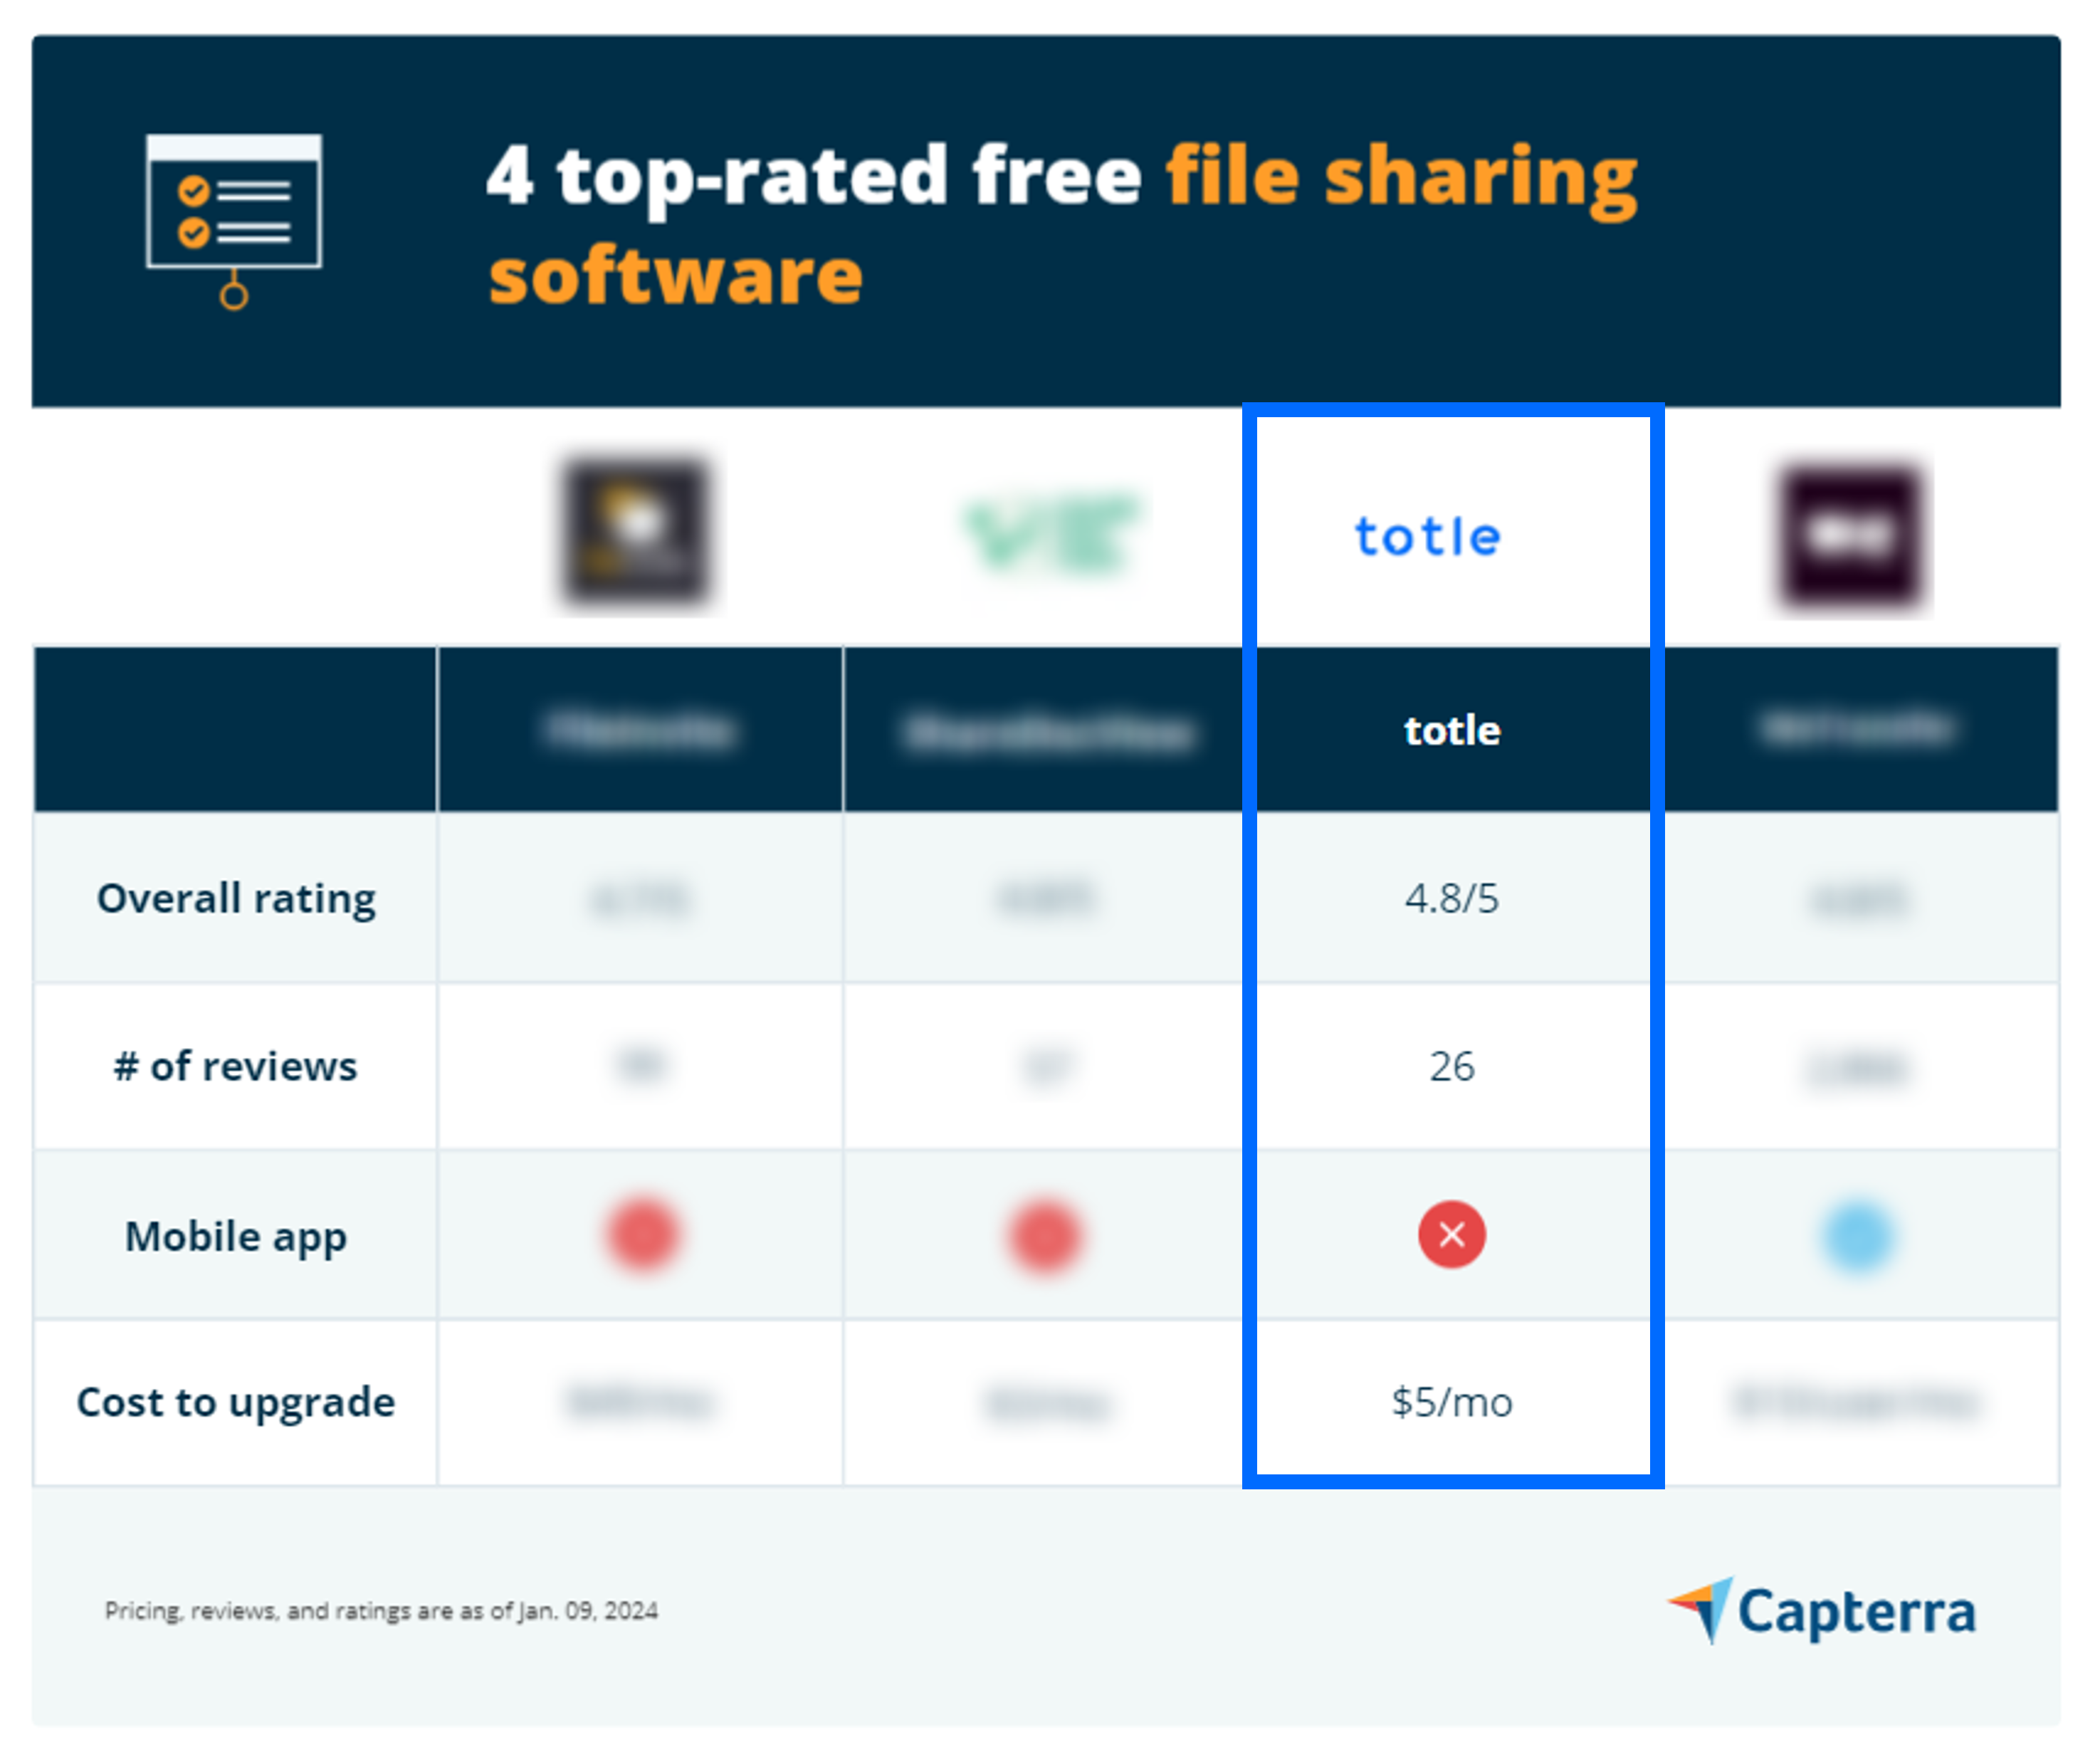 소프트웨어 리뷰 웹사이트 Capterra의 블로그에서 소개된 4가지 파일 공유 소프트웨어 평가표